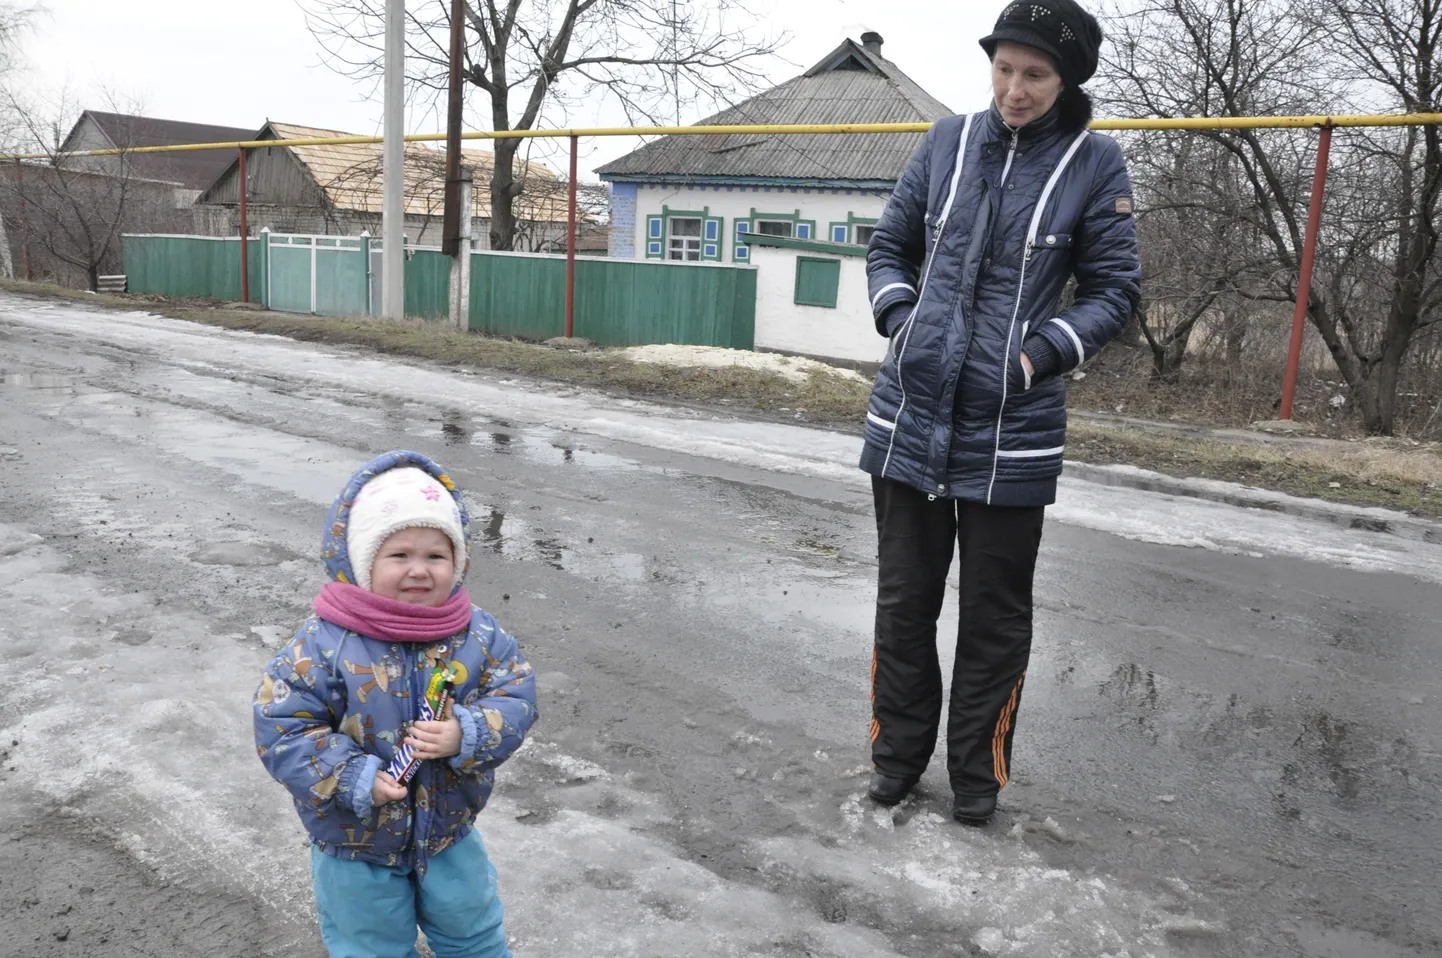 Kahe ja poole aastane Sofia ning tema ema Jana kodumaja ees 
tänaval. Ema sõnul pole pidev pommitamine veel mõjunud lapse arengule: 
Sofia räägib, liigub ja reageerib normaalselt.